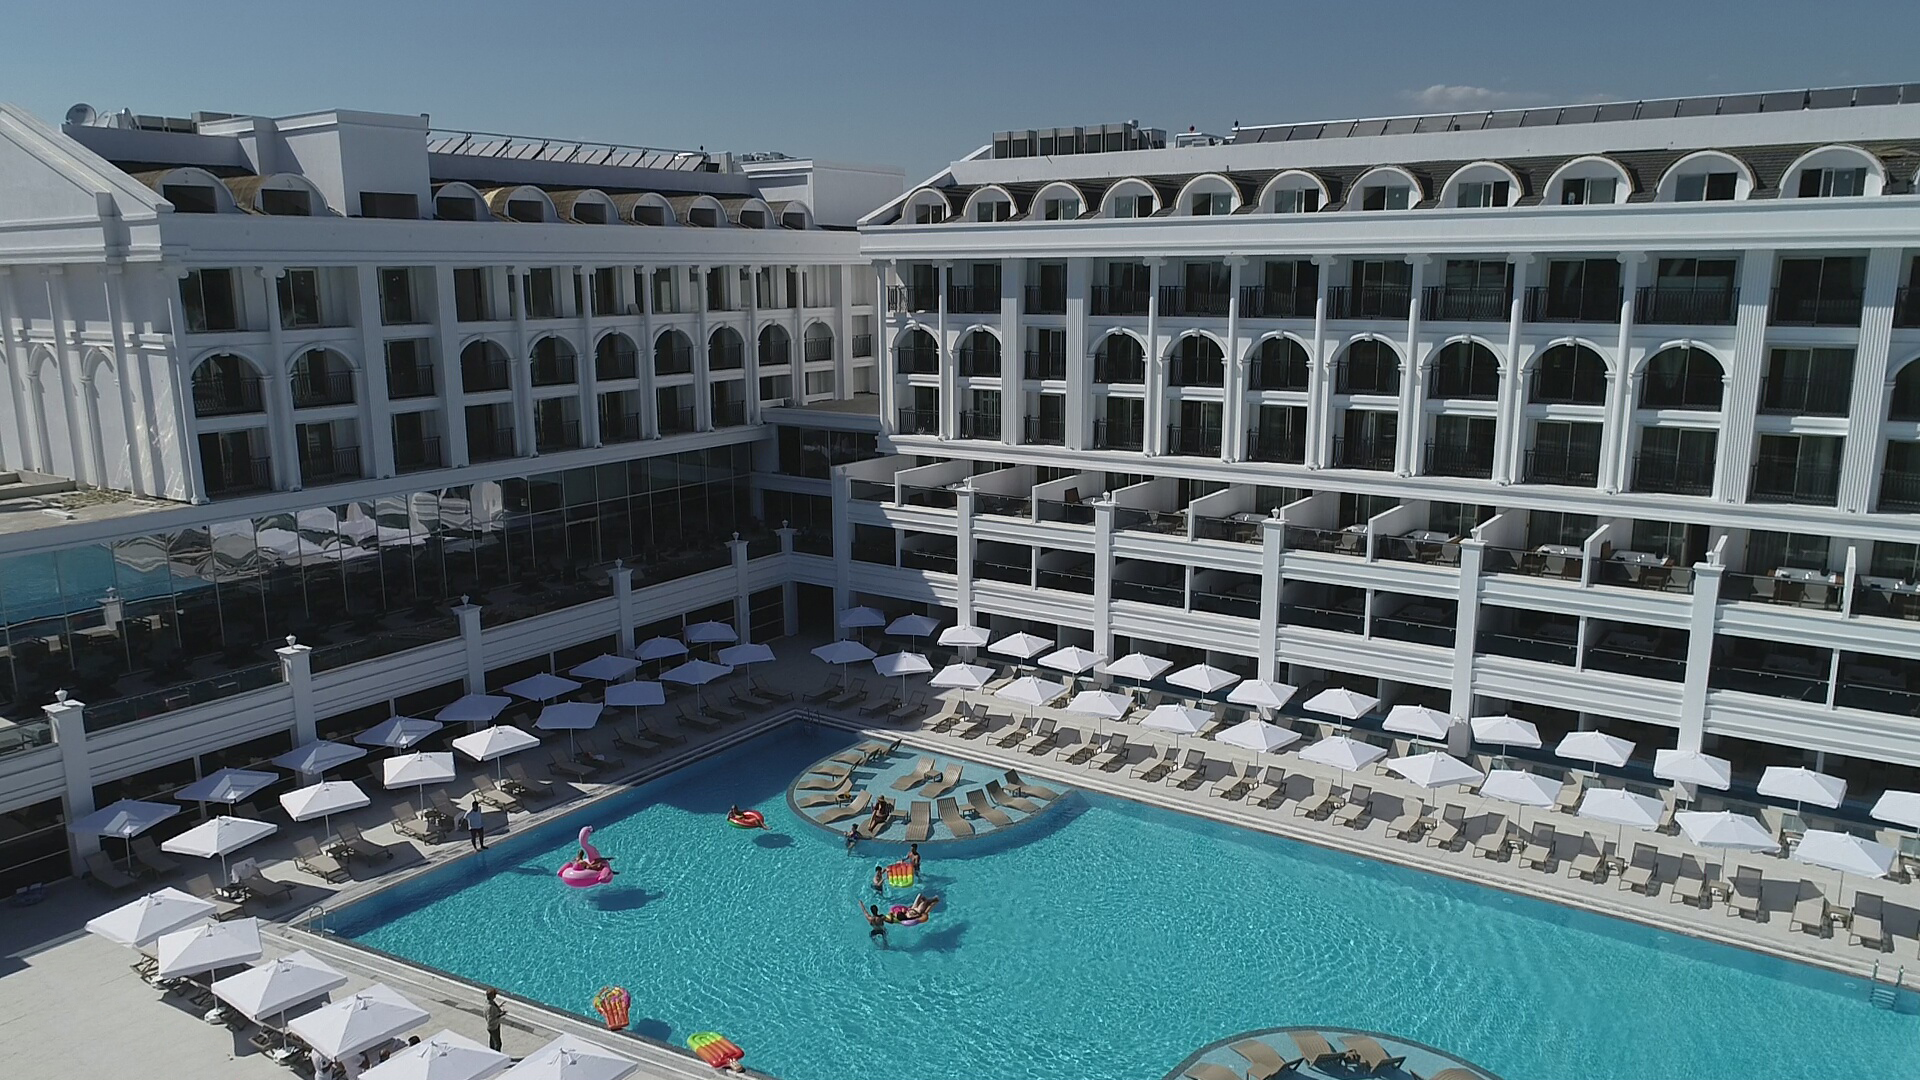 Sunthalia hotels resorts 5. Sunthalia Hotels & Resorts 5*, Турция, Сиде. Сиде Кроун Саншайн. Арканус Сиде Резорт Турция 5 звезд. Side Crown Sunshine 5.